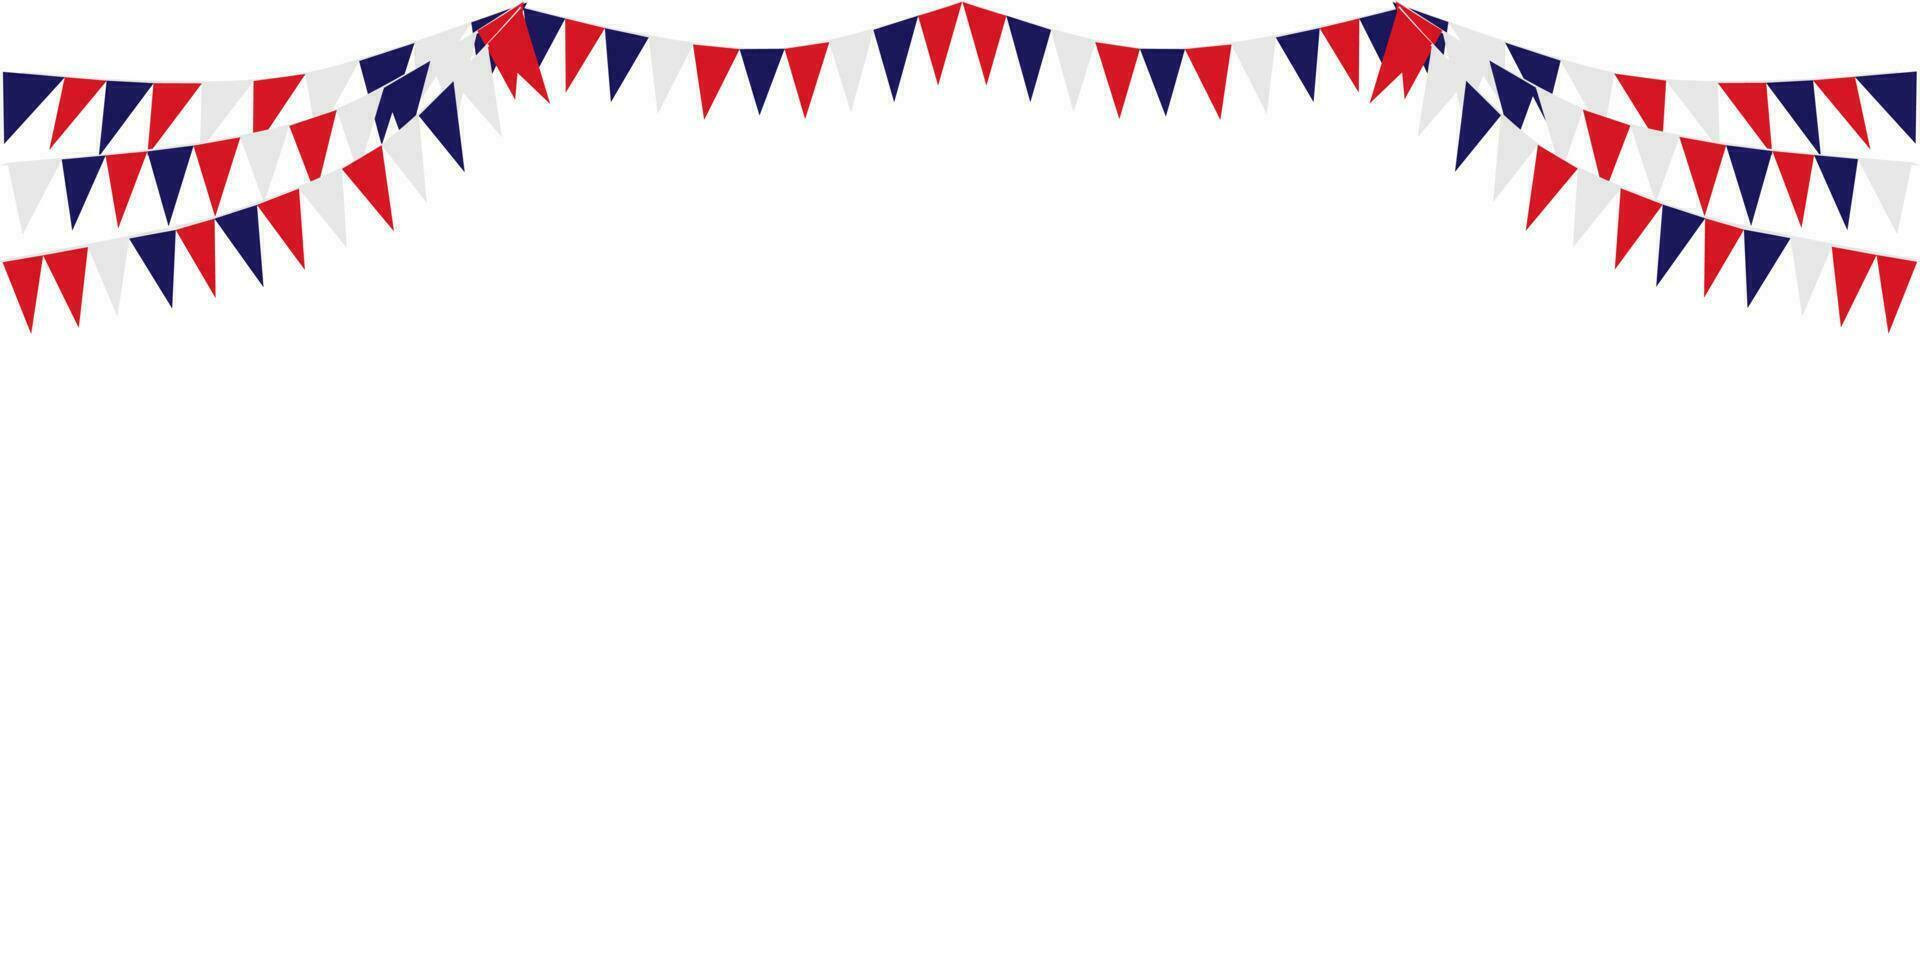 flaggväv hängande röd vit blå flaggor trianglar krans baner bakgrund. förenad stat av Amerika, Frankrike, thailand, ny Zeeland, Nederländerna, brittisk, bra Storbritannien, USA vektor